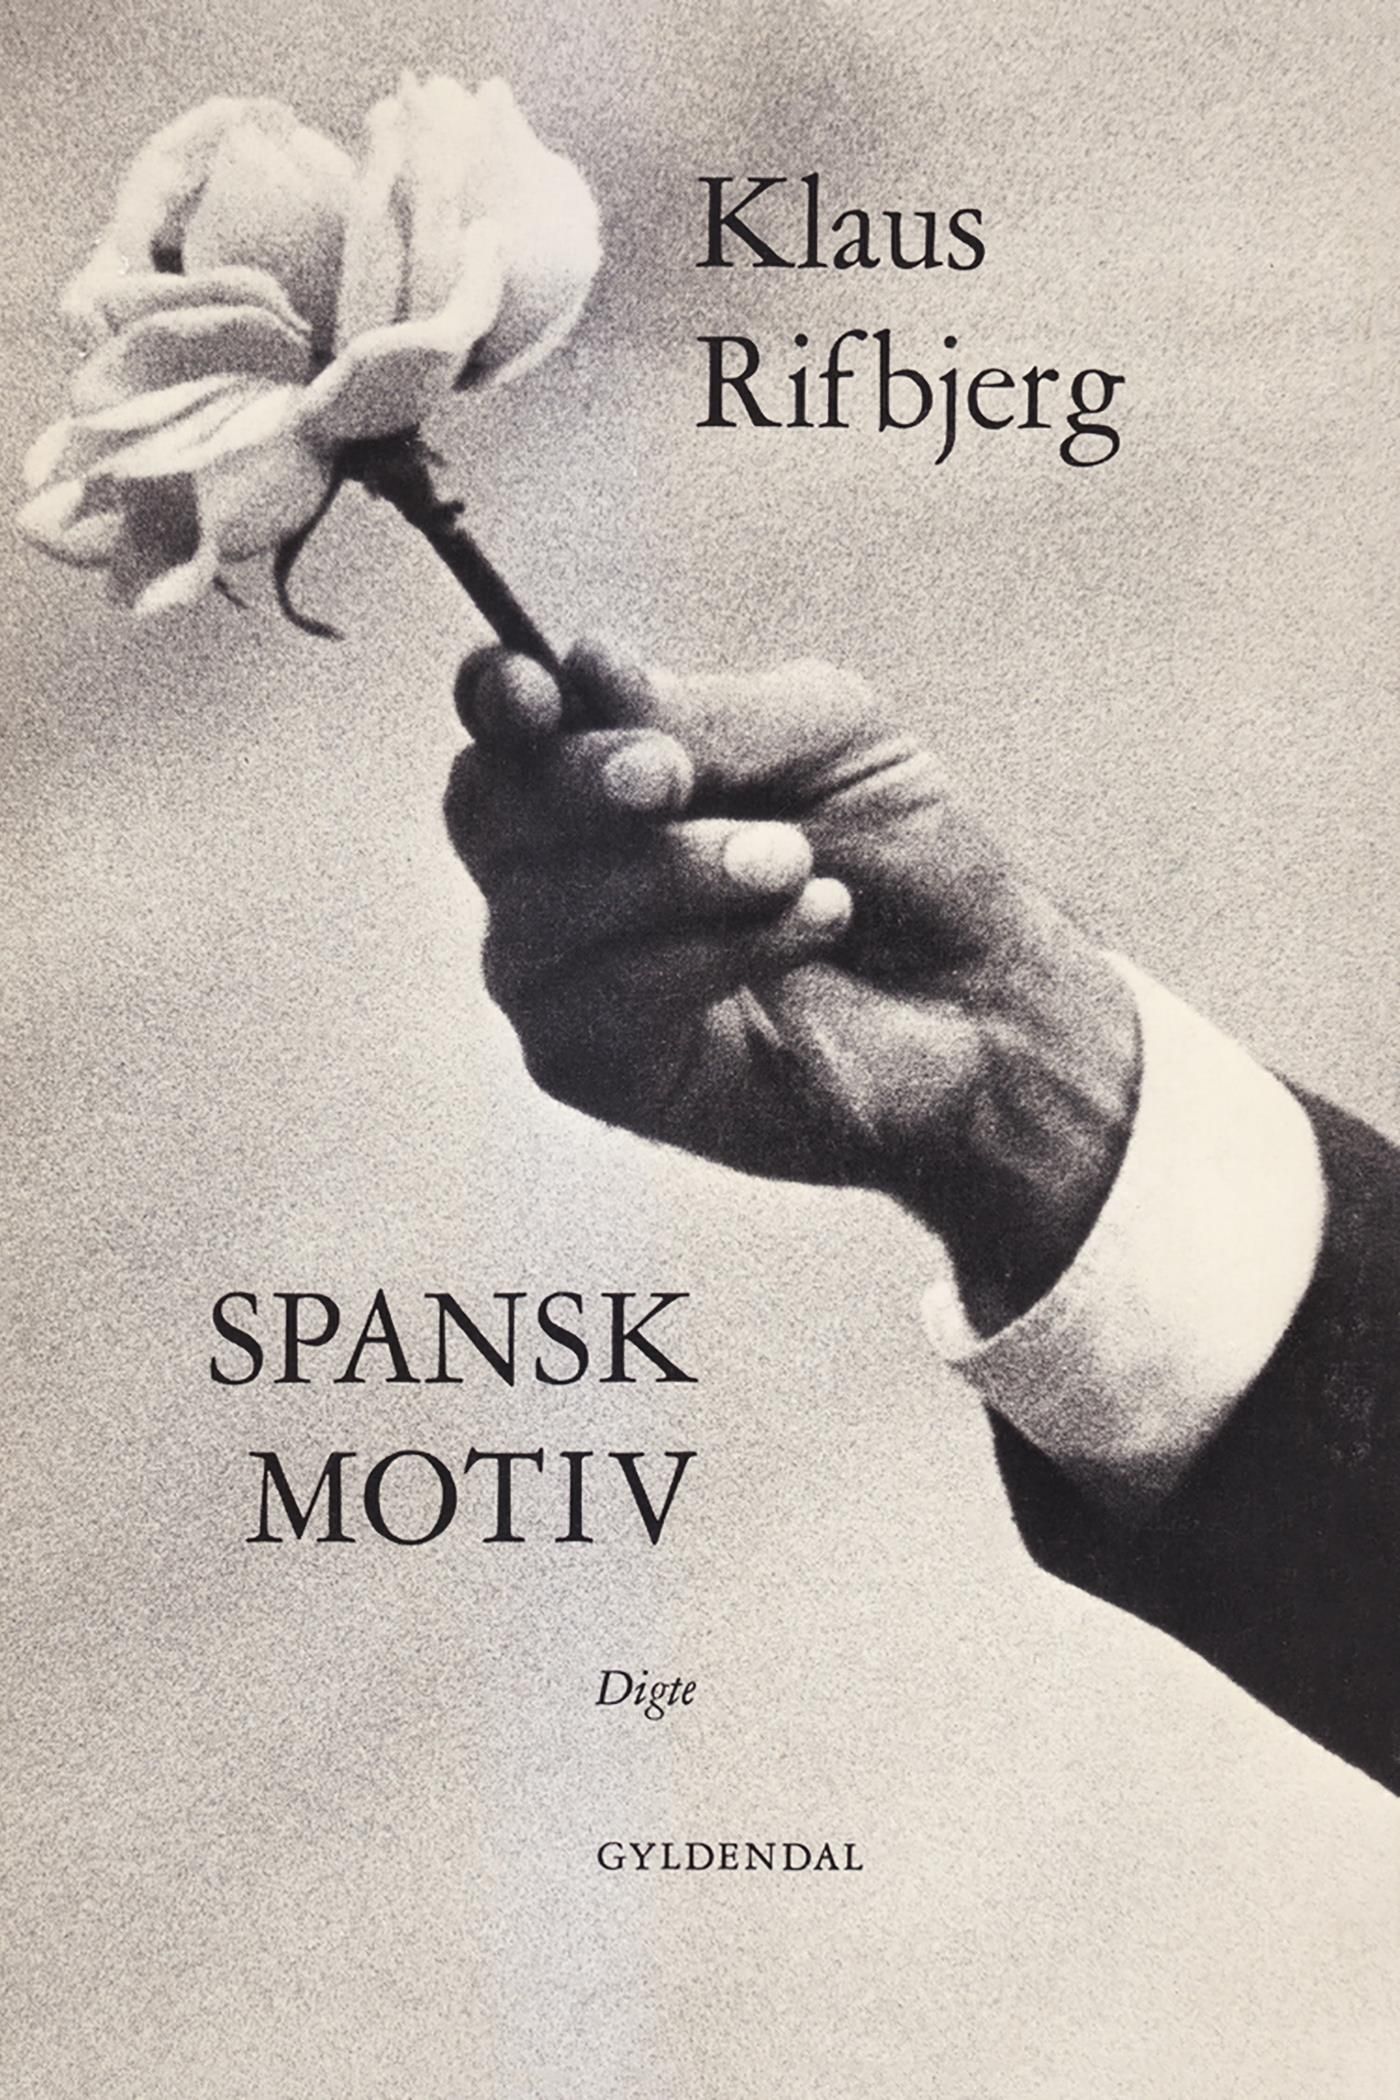 Spansk motiv, e-bog af Klaus Rifbjerg